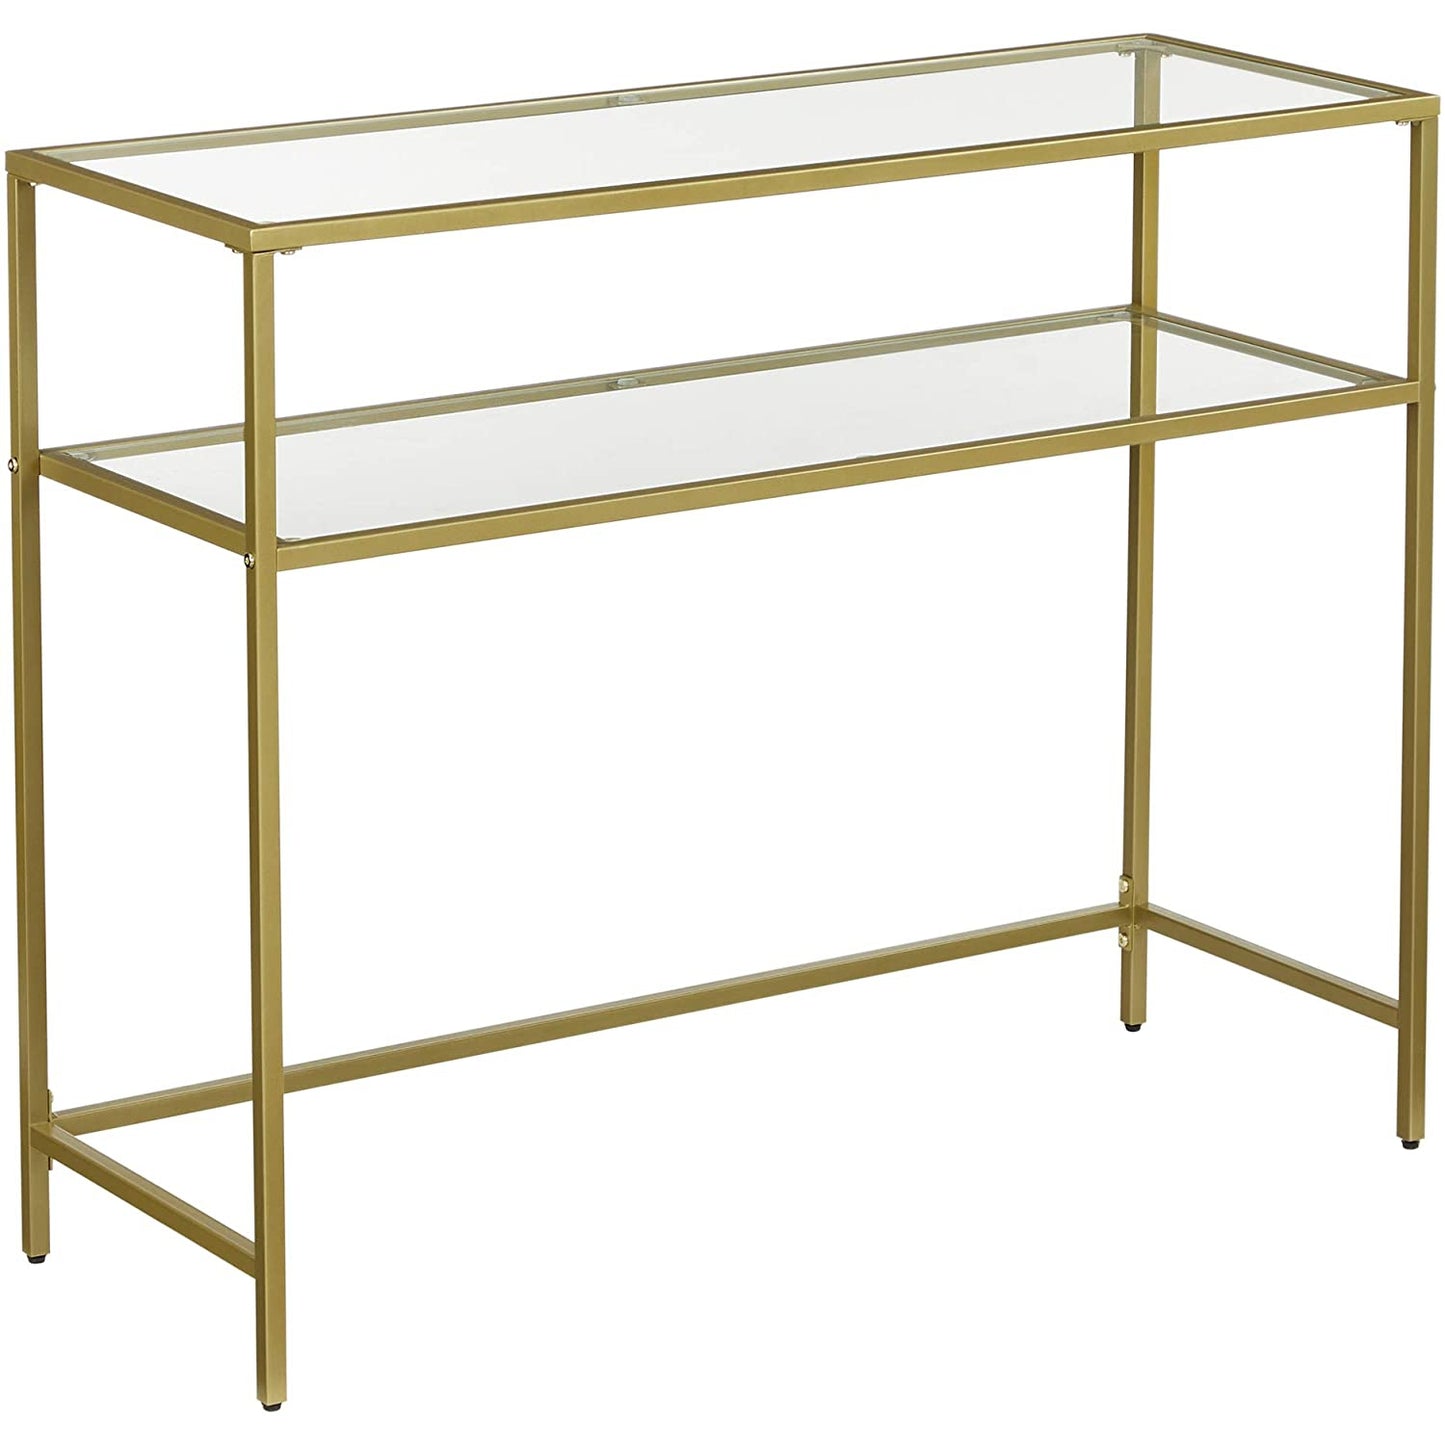 Table console Nancy's Goldfield - Table d'appoint - 2 niveaux - Verre trempé - Structure en métal - Pieds réglables - Or - 100 x 35 x 80 cm